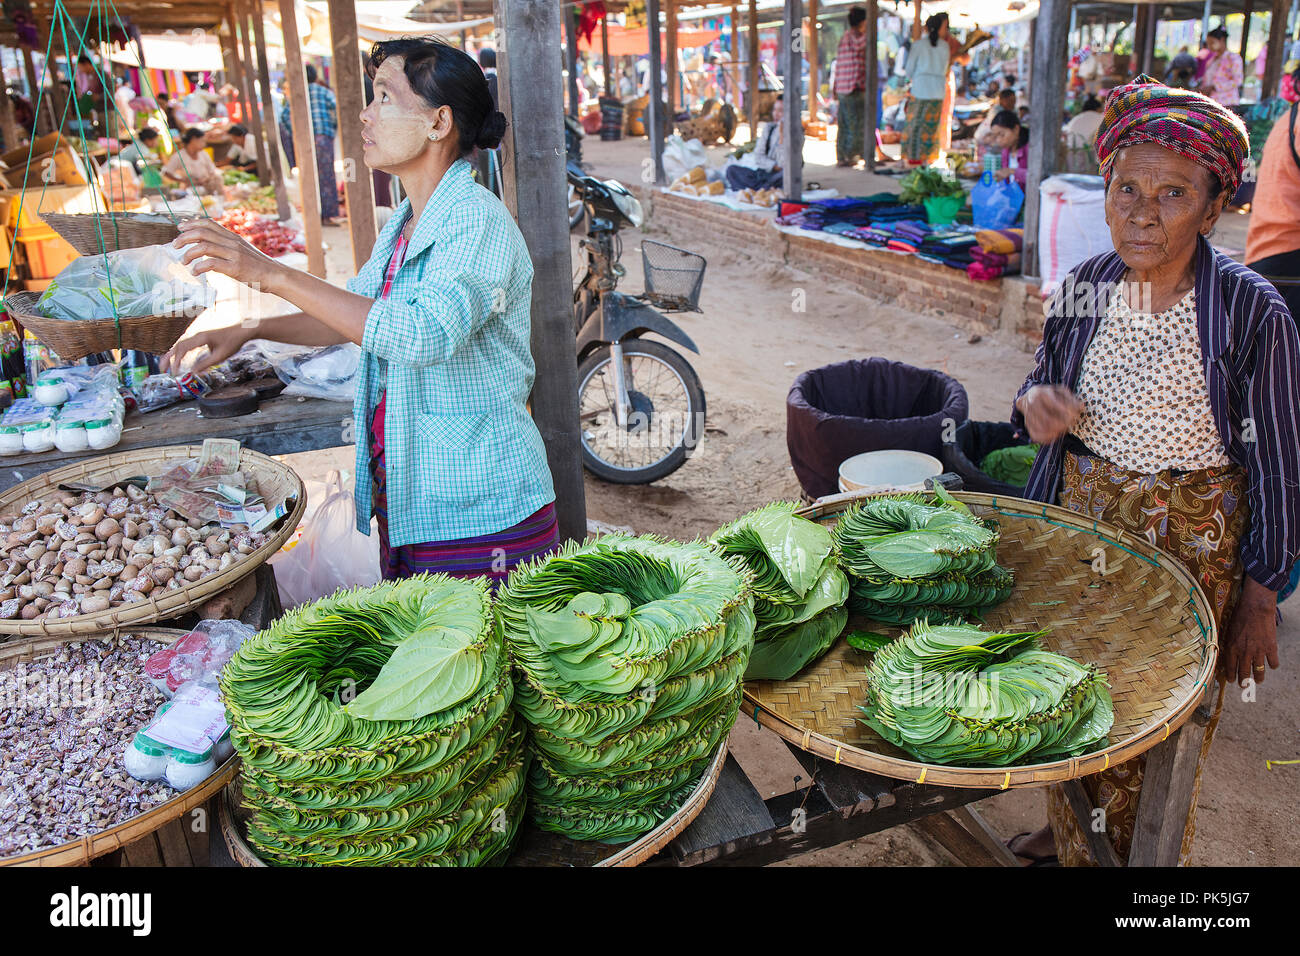 Les clients et les vendeurs interagissent dans un stand de légumes d'un marché local. Bagan, Myanmar (Birmanie). Banque D'Images